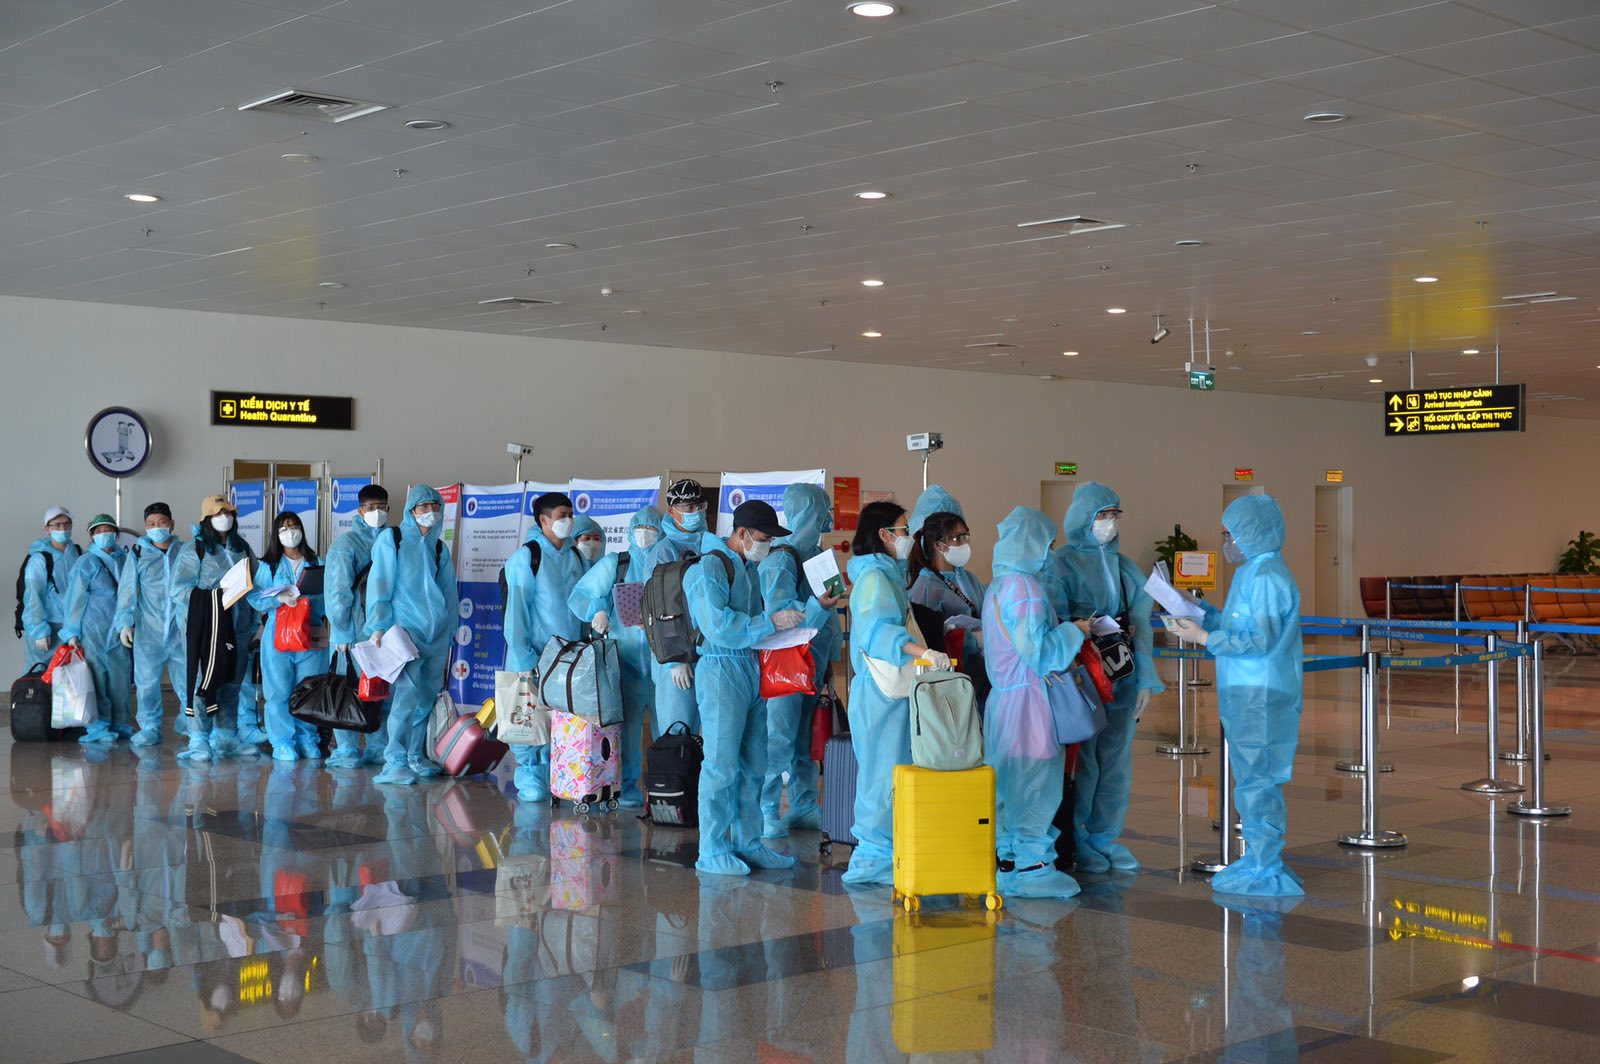 Số lương khách trên chuyến bay là 104 người, bao gồm 15 khách nước ngoài, 89 khách Việt Nam. Trong số đó, có 03 khách em bé dưới 02 tuổi